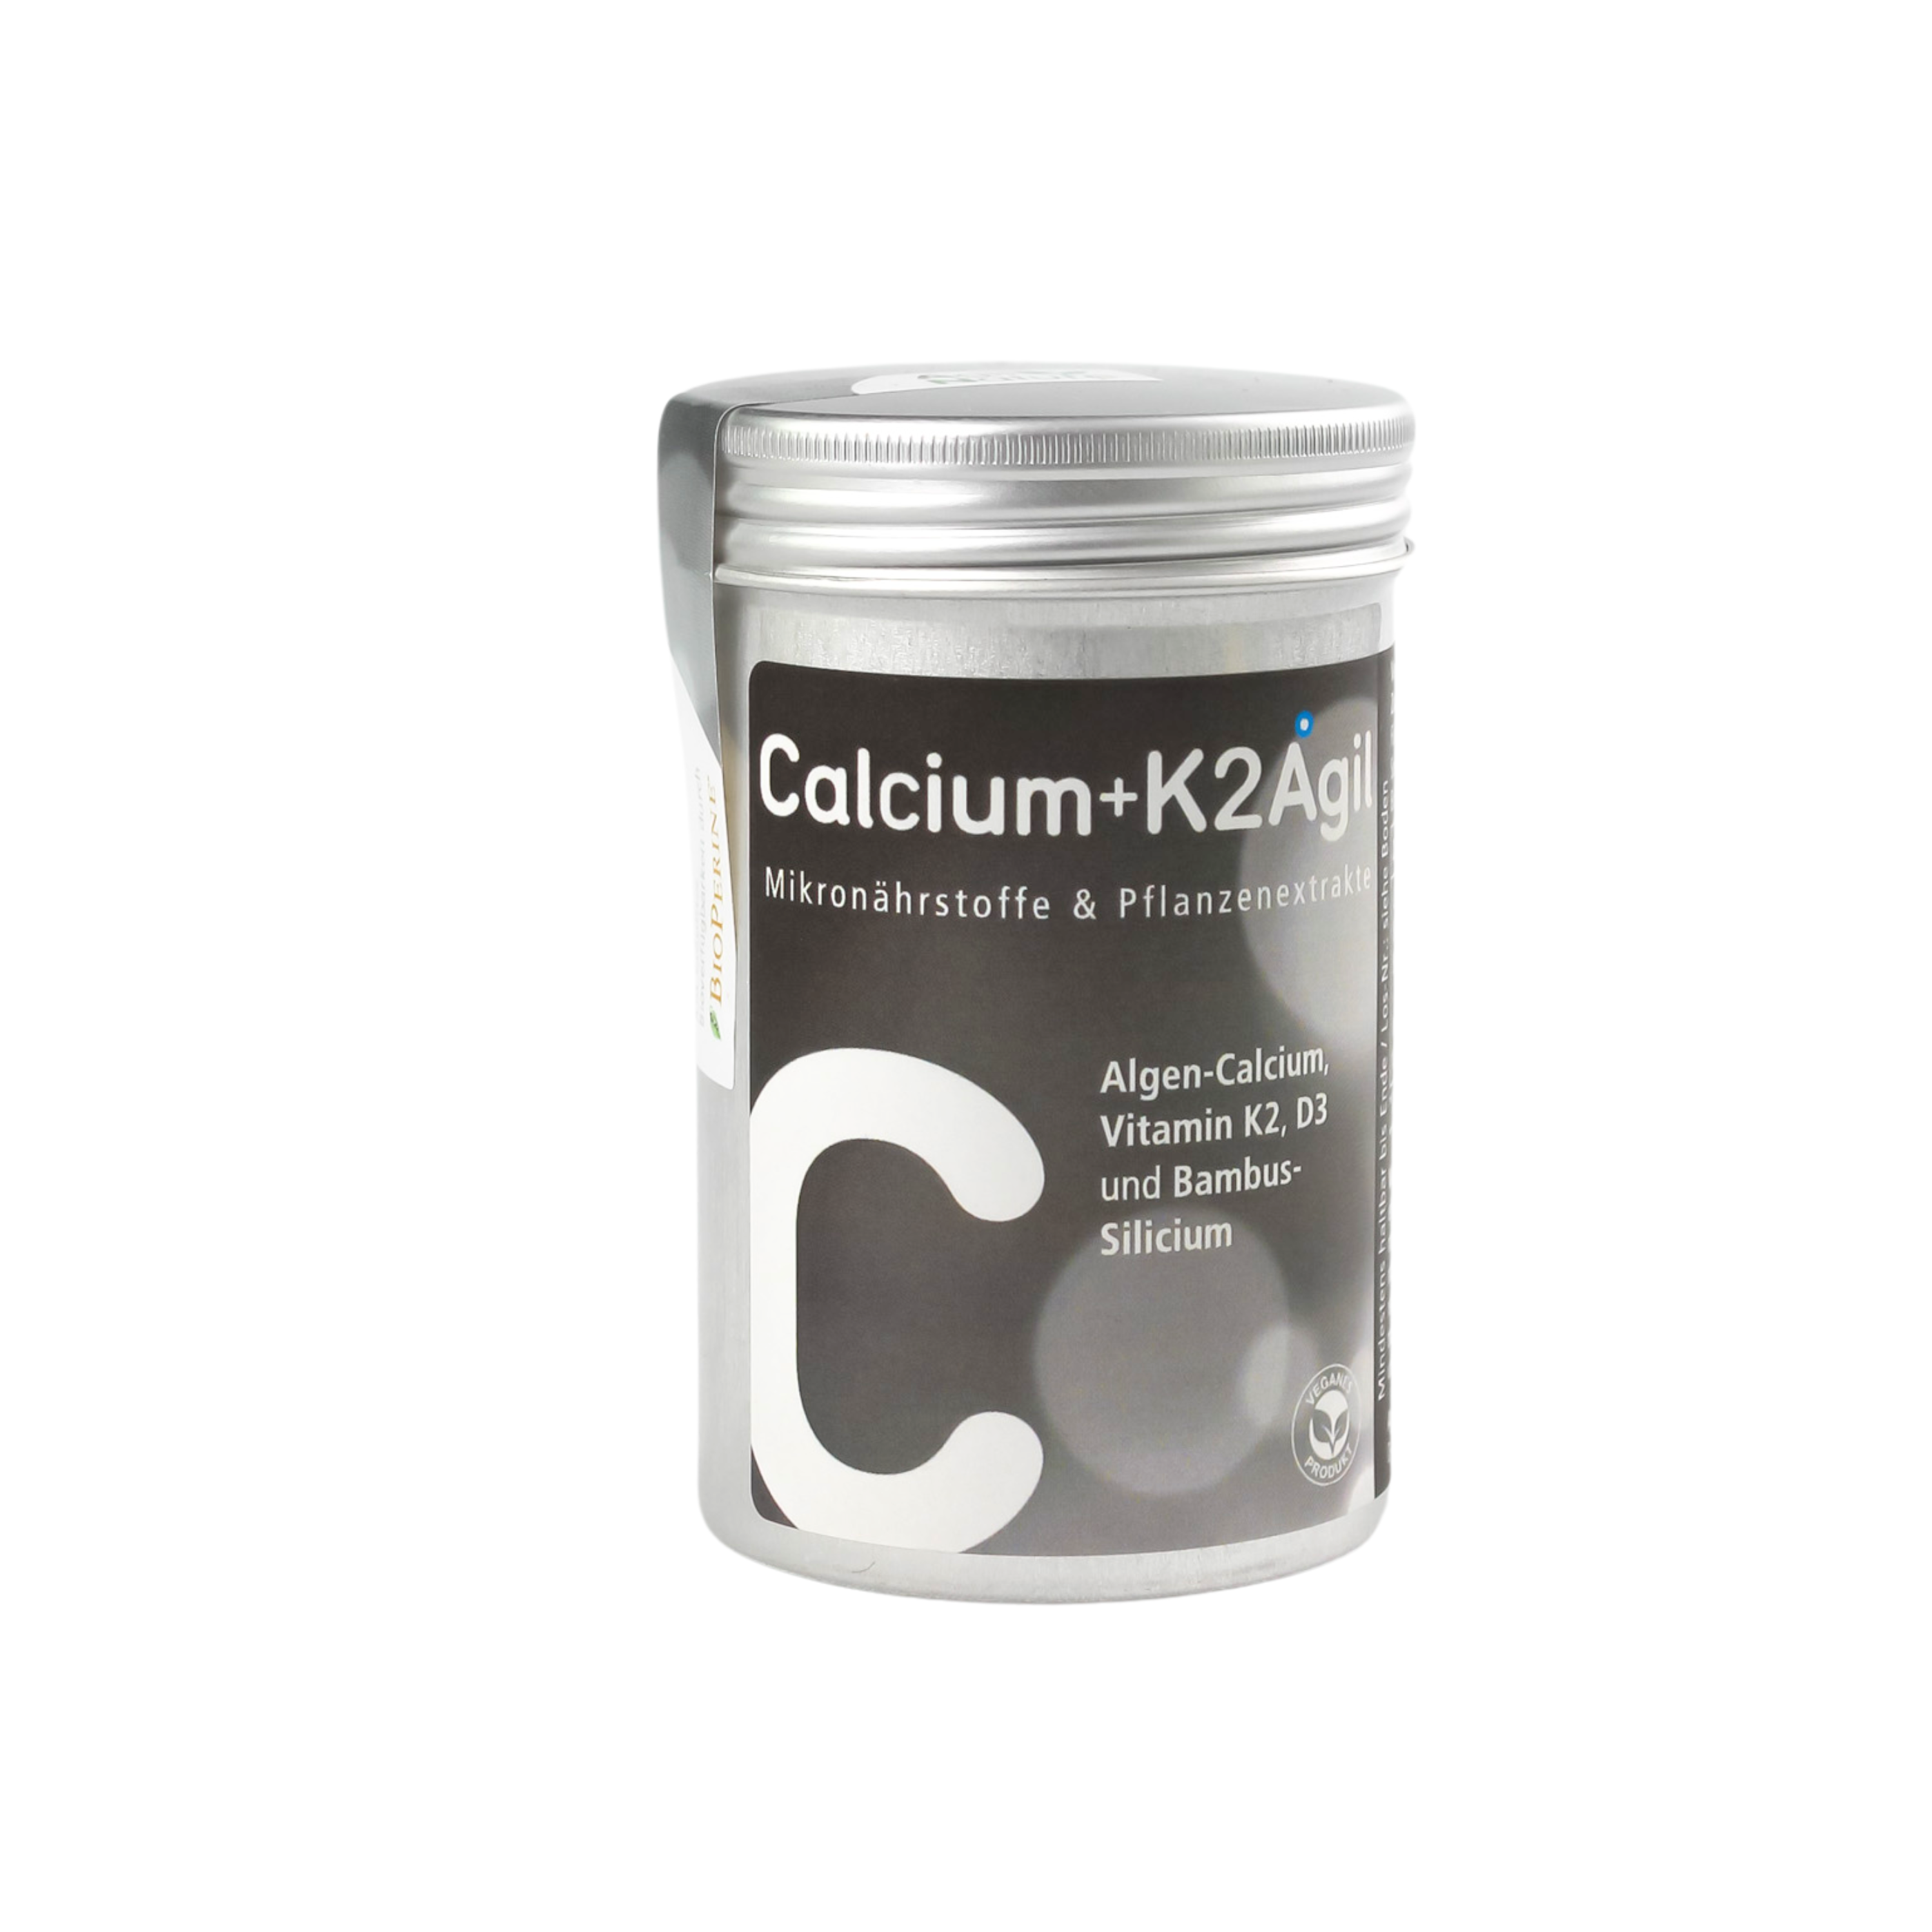 Calcium+K2Agil